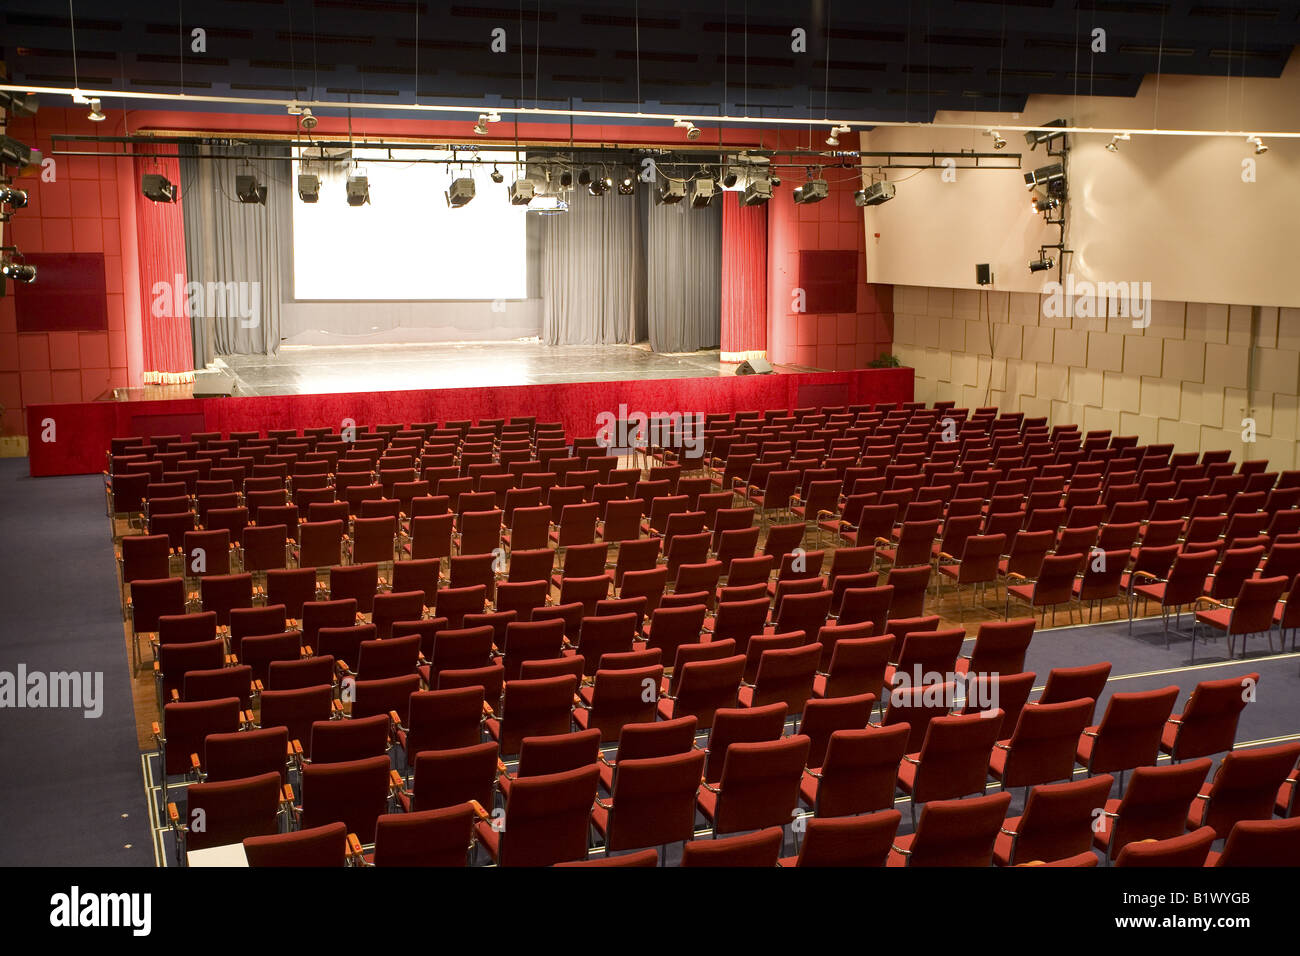 empty cinema auditorium Stock Photo